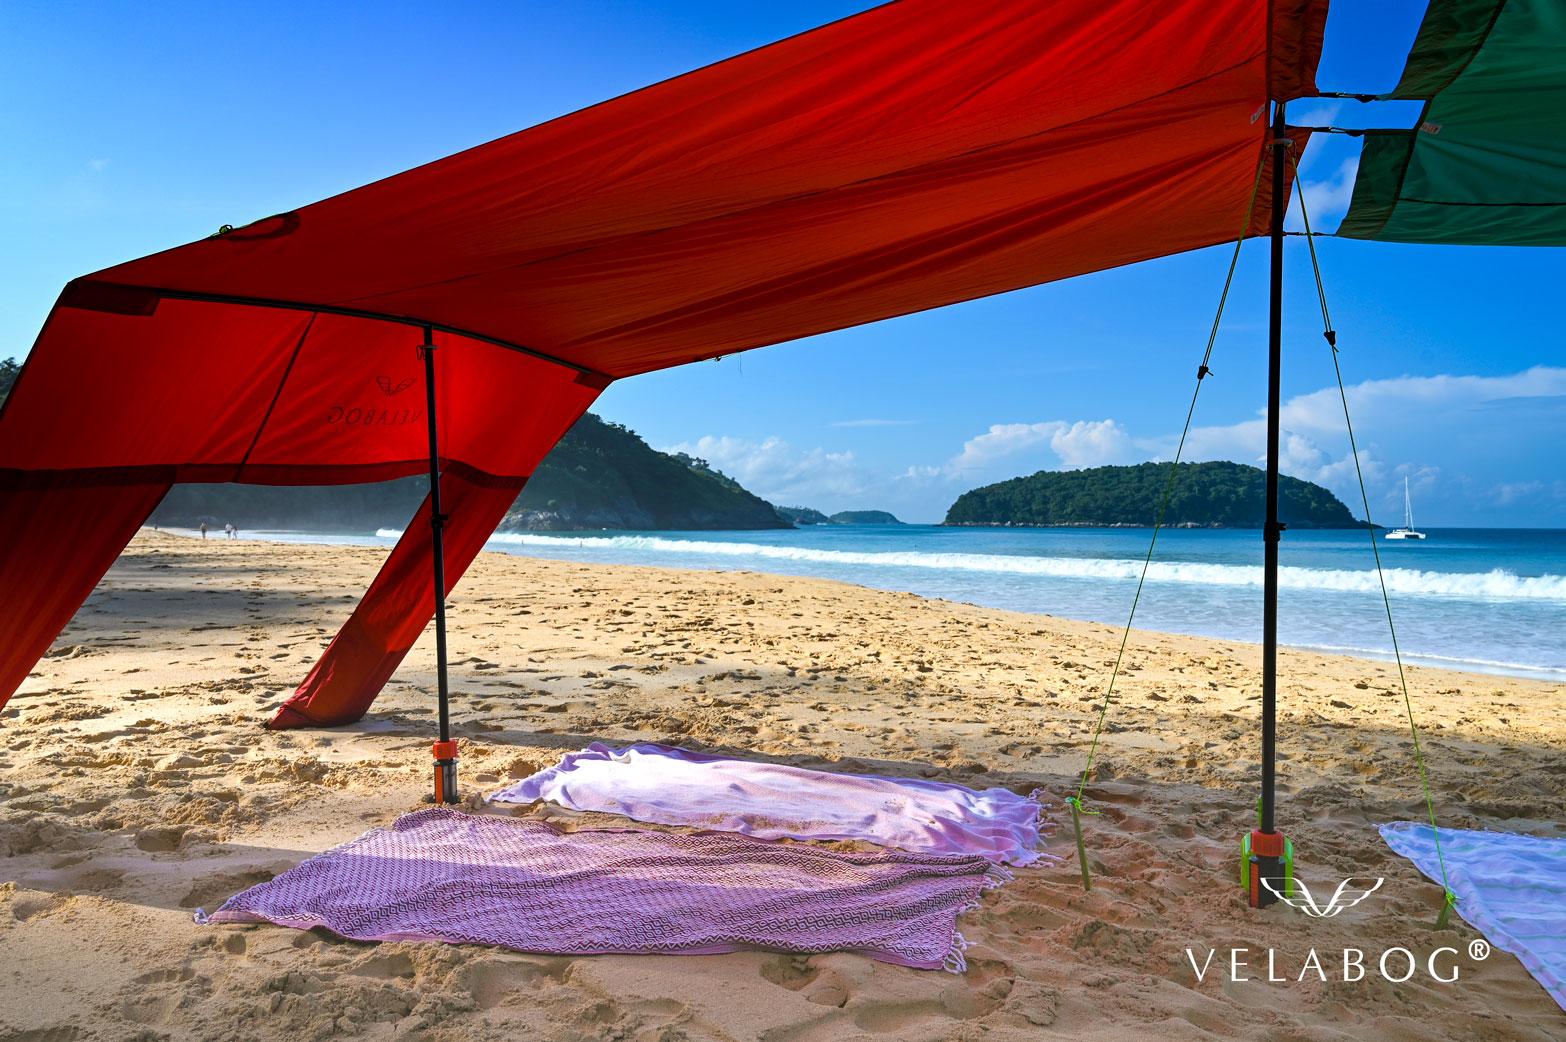 Combinación de dos toldos playa Velabog Breeze. Refugio solar en la playa con mucha sombra para 6 personas como mínimo. La mejor carpa en la playa. Opción de montaje con kit de ampliación para días sin viento o con poco viento. Detalles.